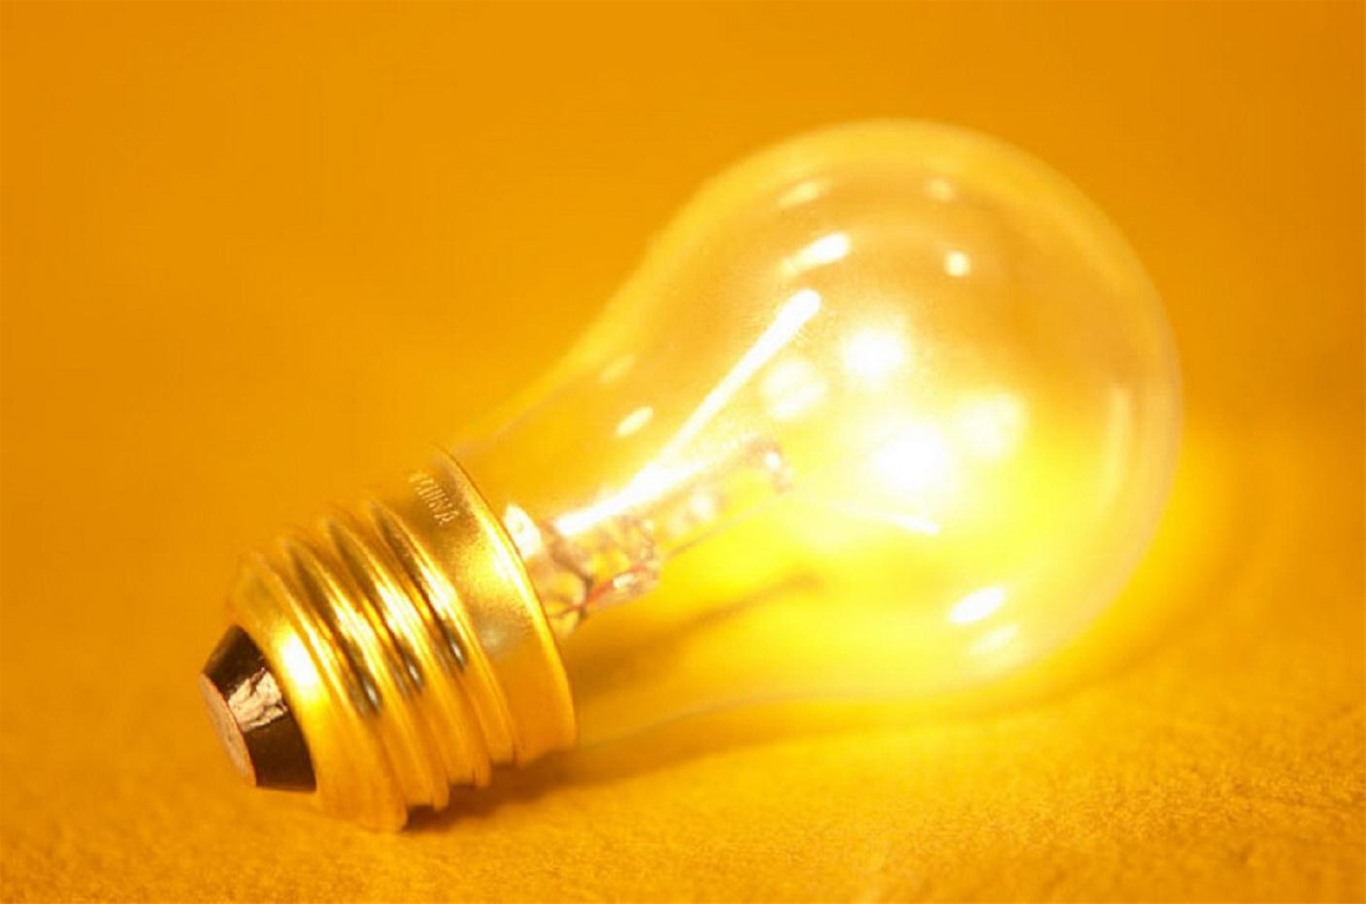 Lựa chọn bóng đèn sạc tích điện phù hợp với từng mục đích sử dụng 2